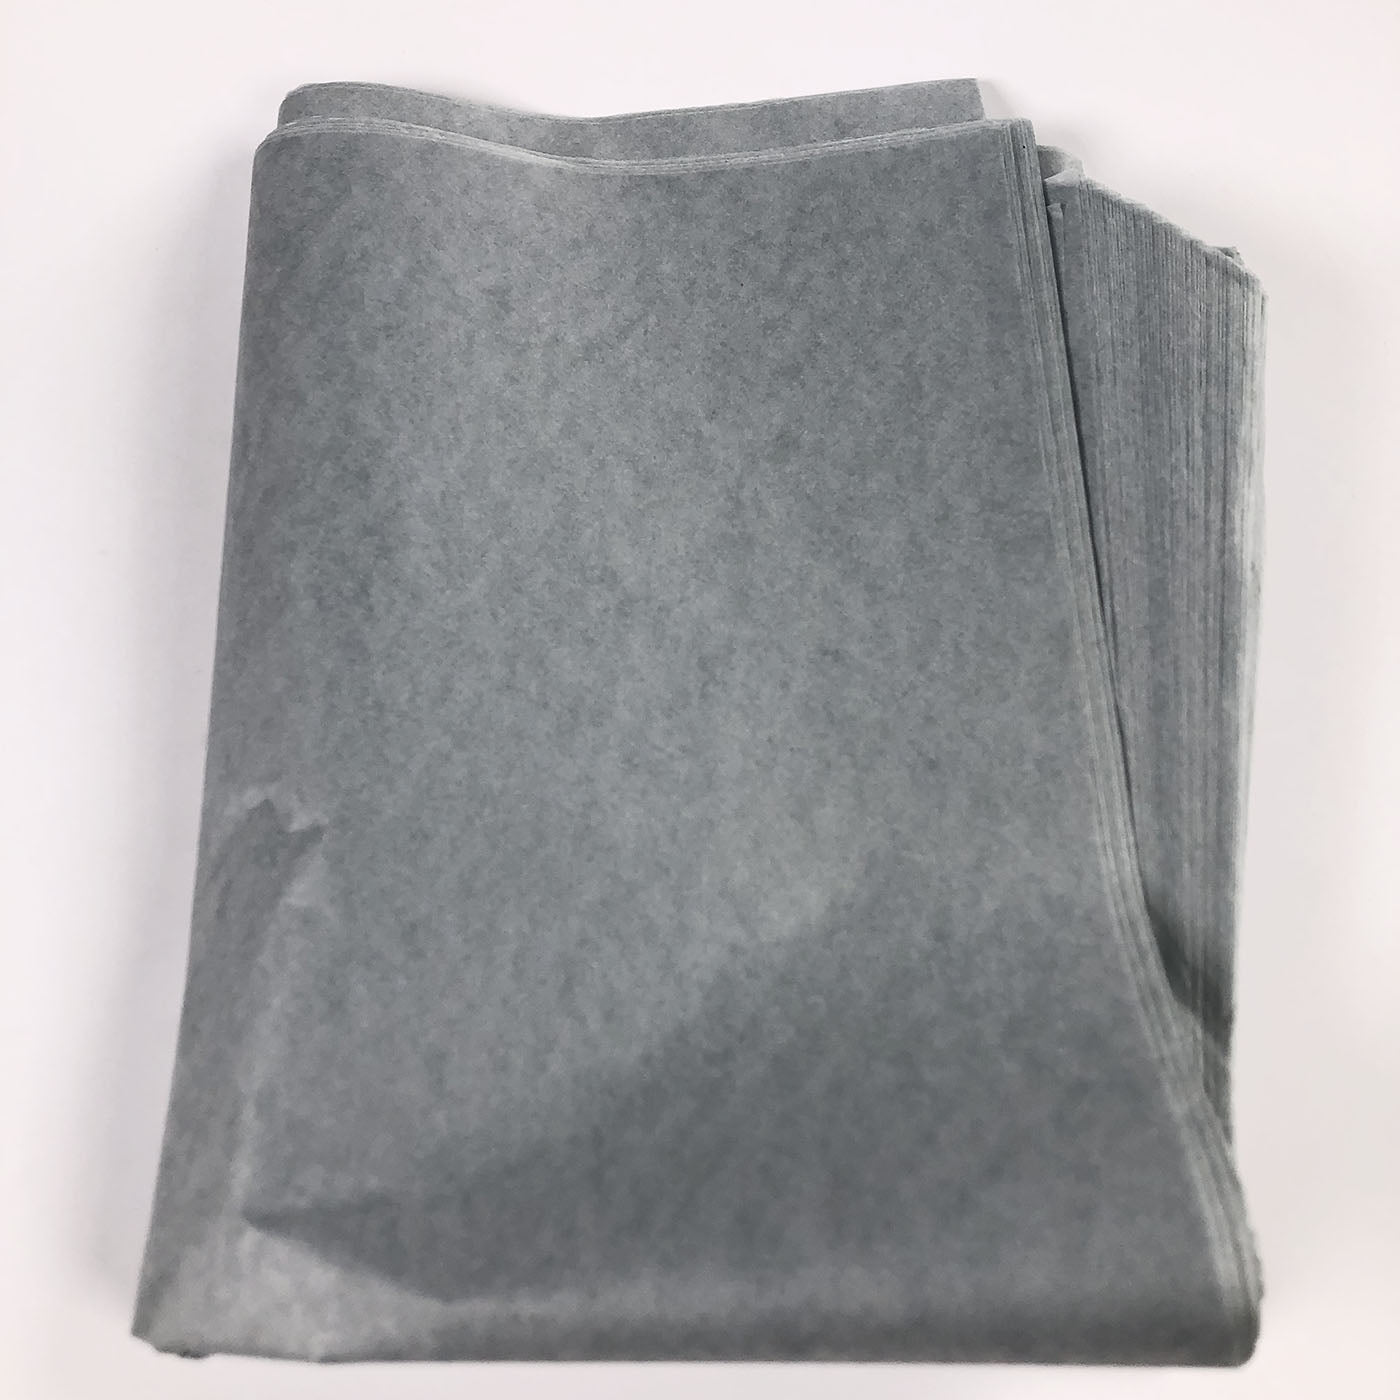 Tissue Paper 50cm x 75cm 17gsm Grey